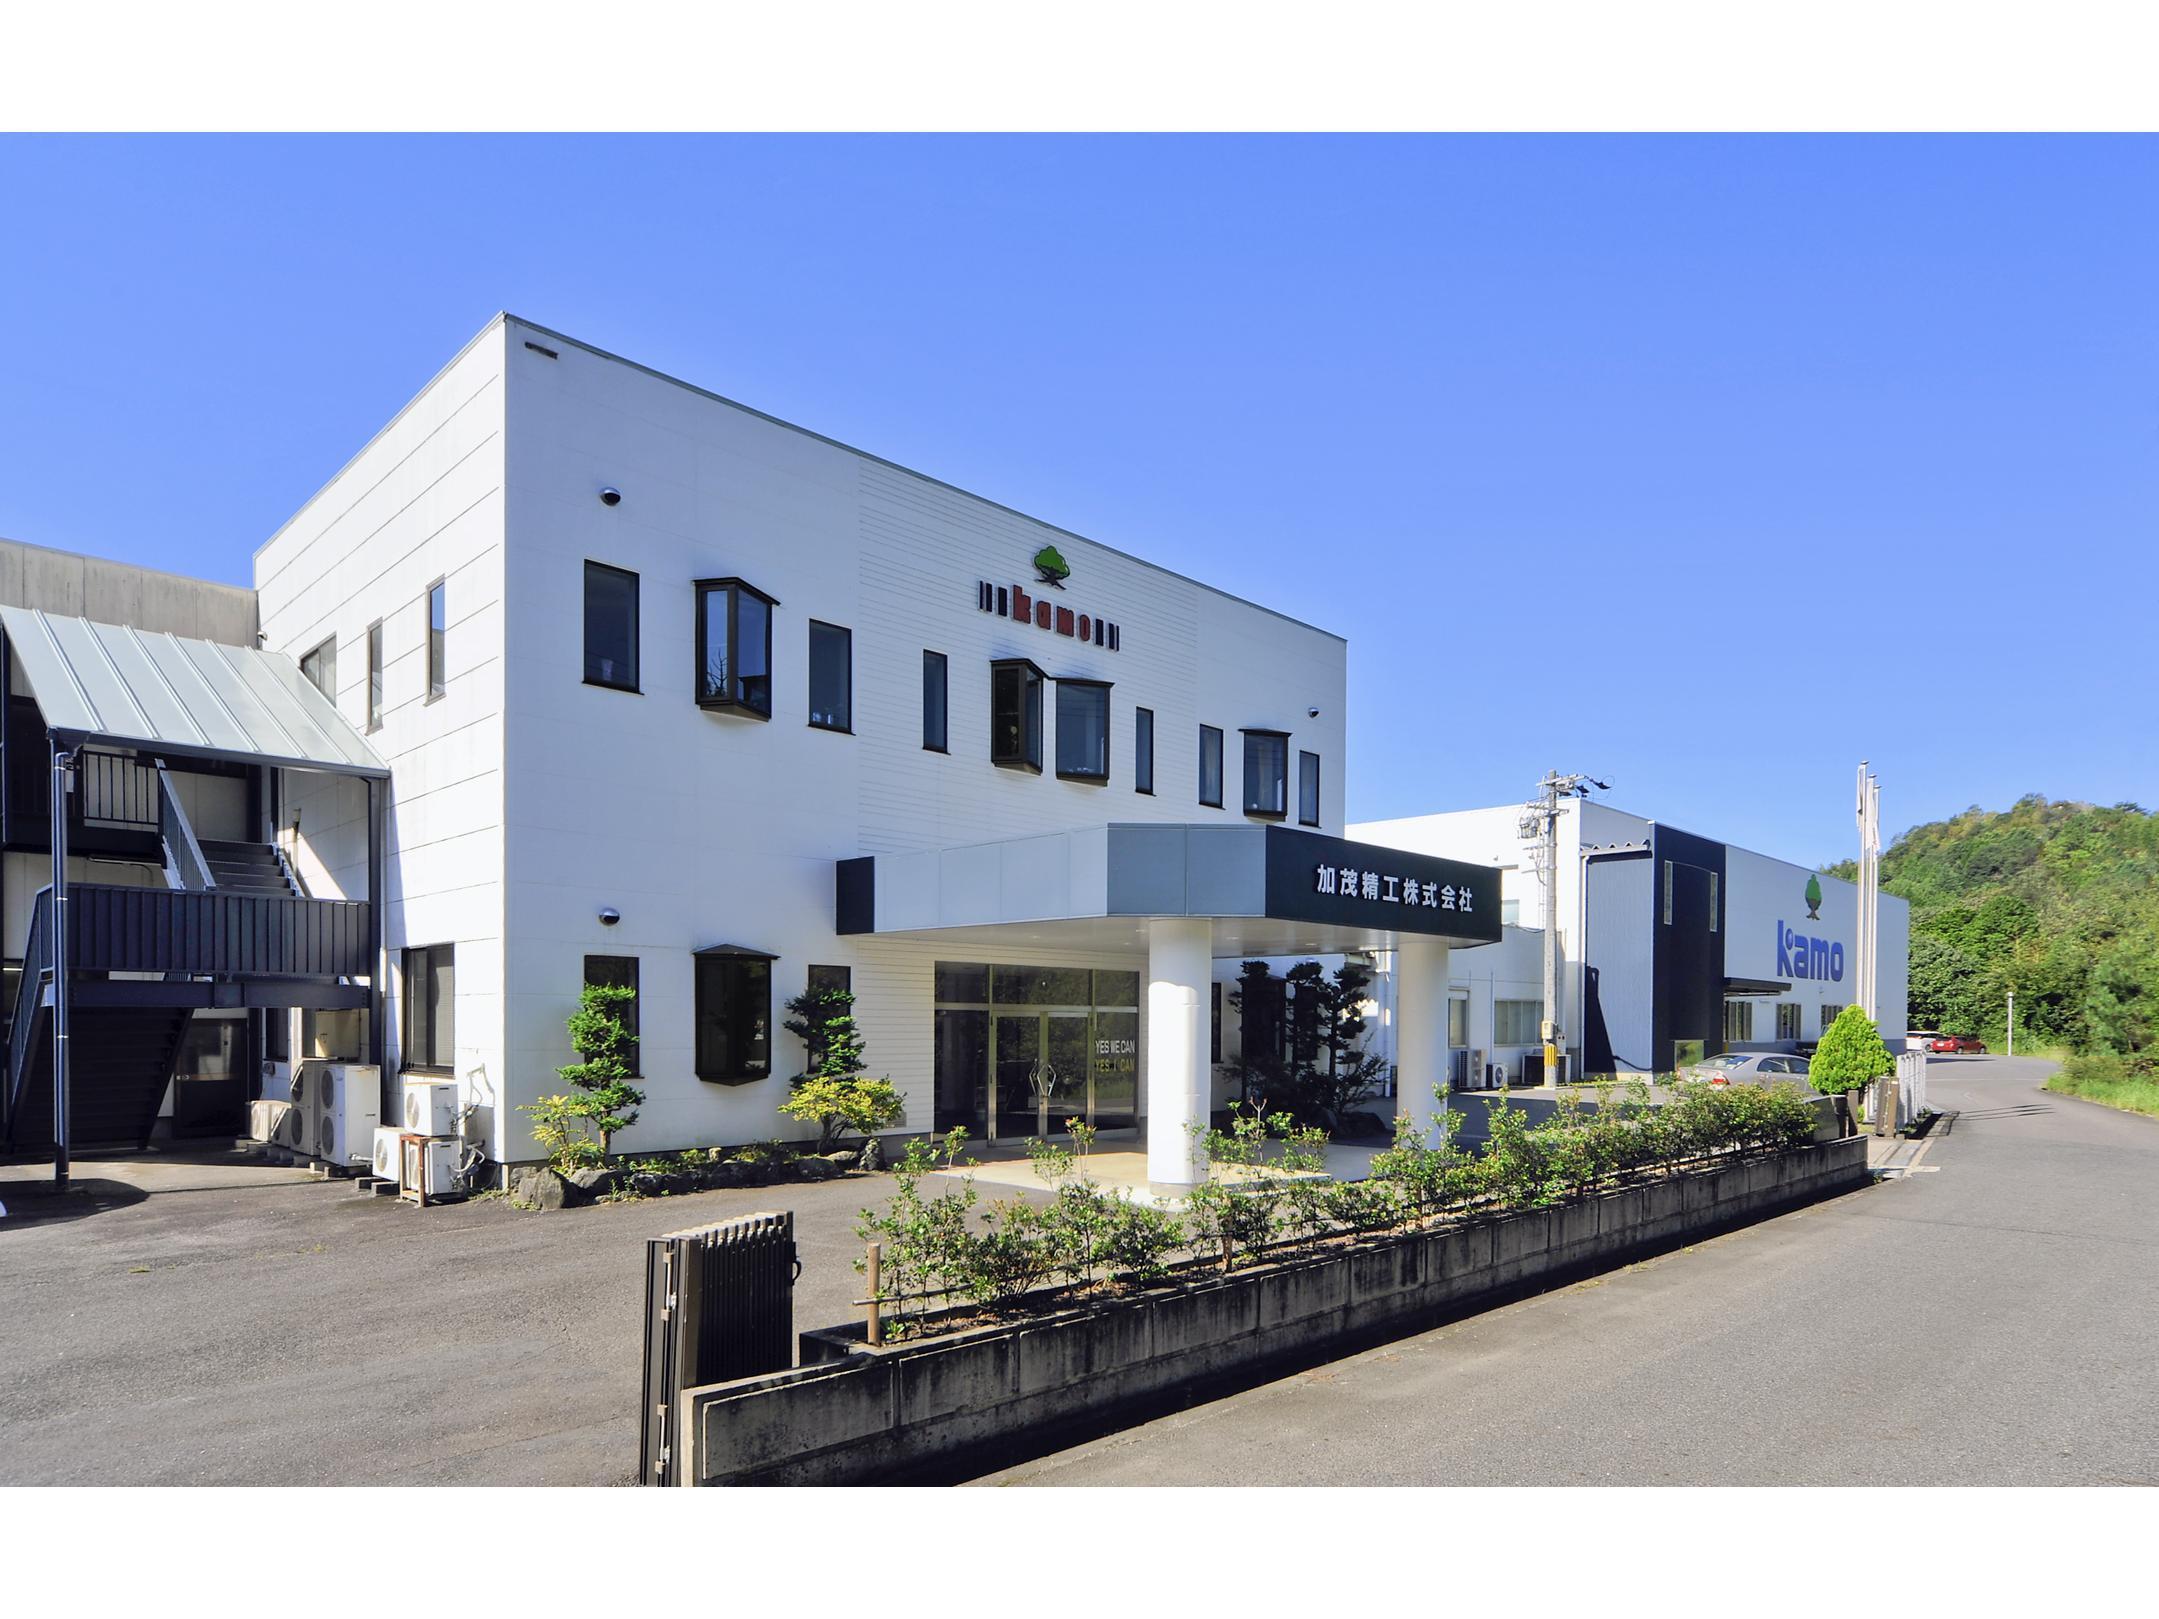 本社は愛知県豊田市にあります。